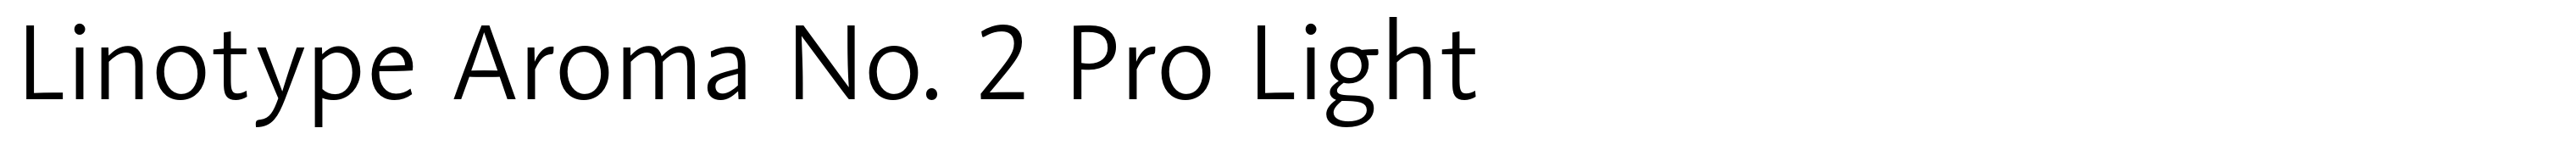 Linotype Aroma No. 2 Pro Light